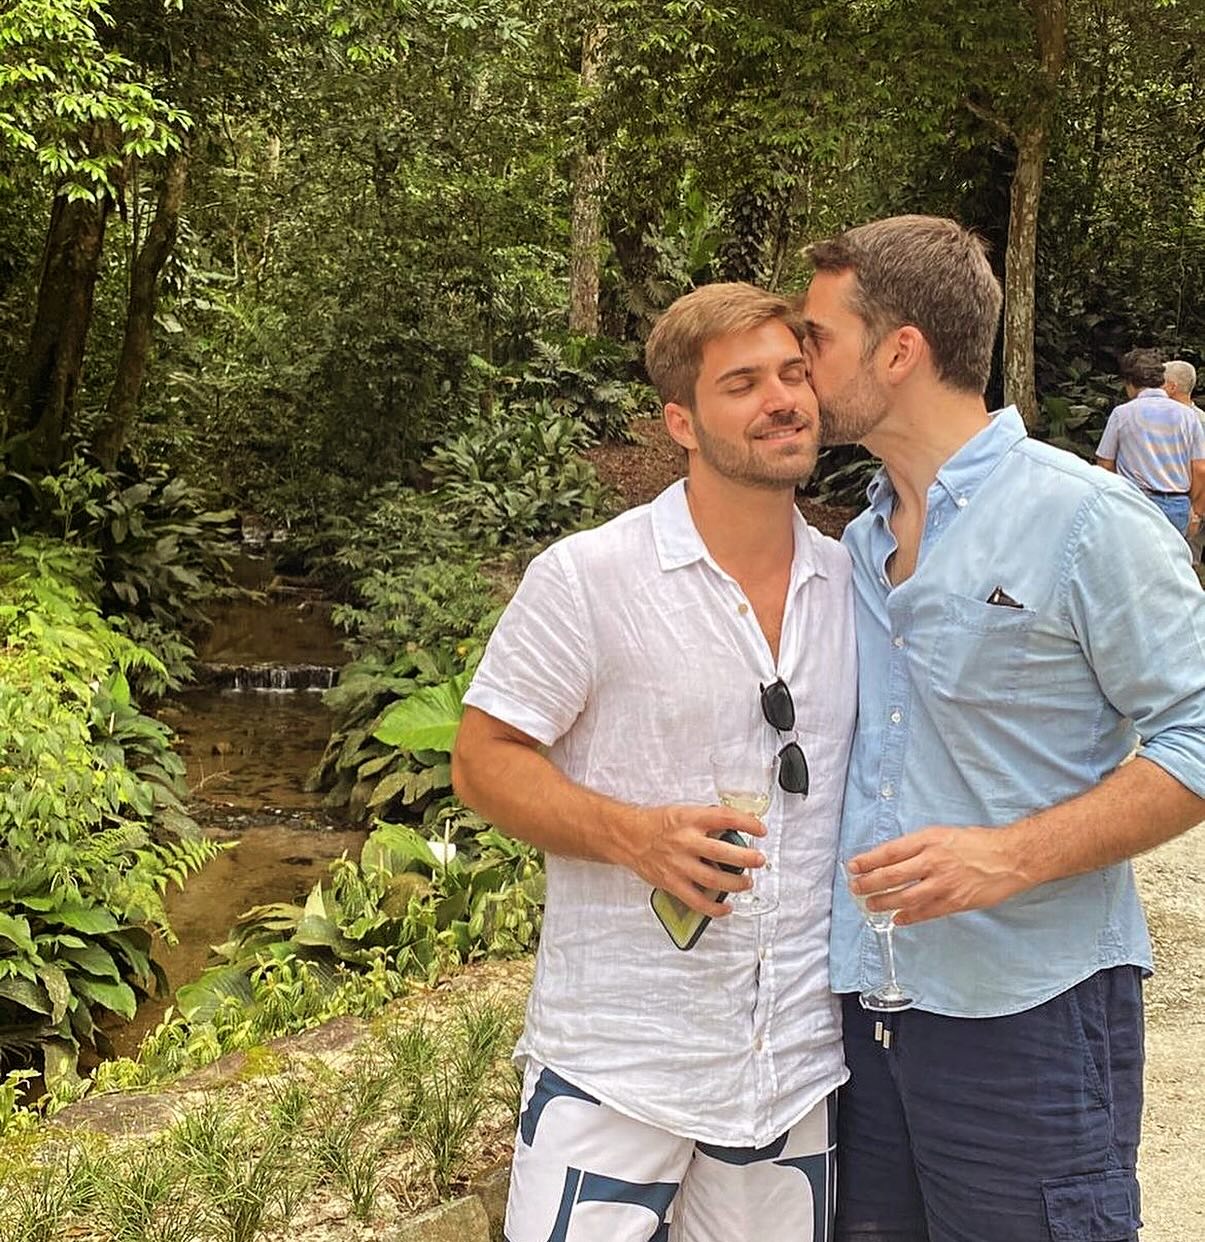 Beijo apaixonado! Eduardo Leite posta foto e faz declaração a namorado capixaba: "Te amo" (Foto: Reprodução/Instagram @eduardoleite45)